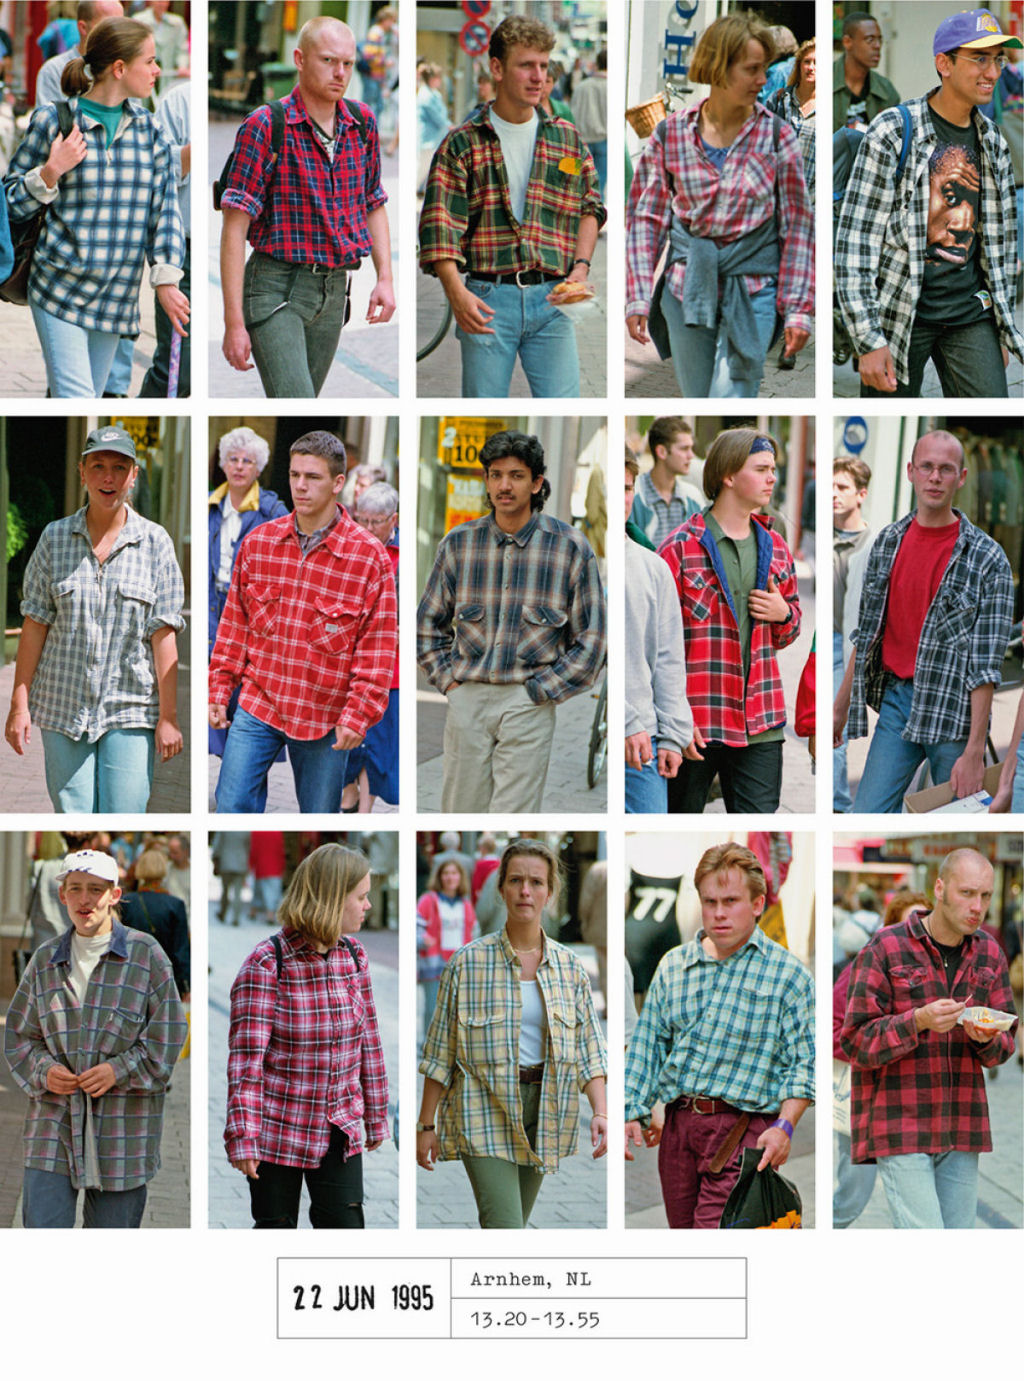 Este fotógrafo passou 20 anos documentando como todos nos vestimos iguais 07